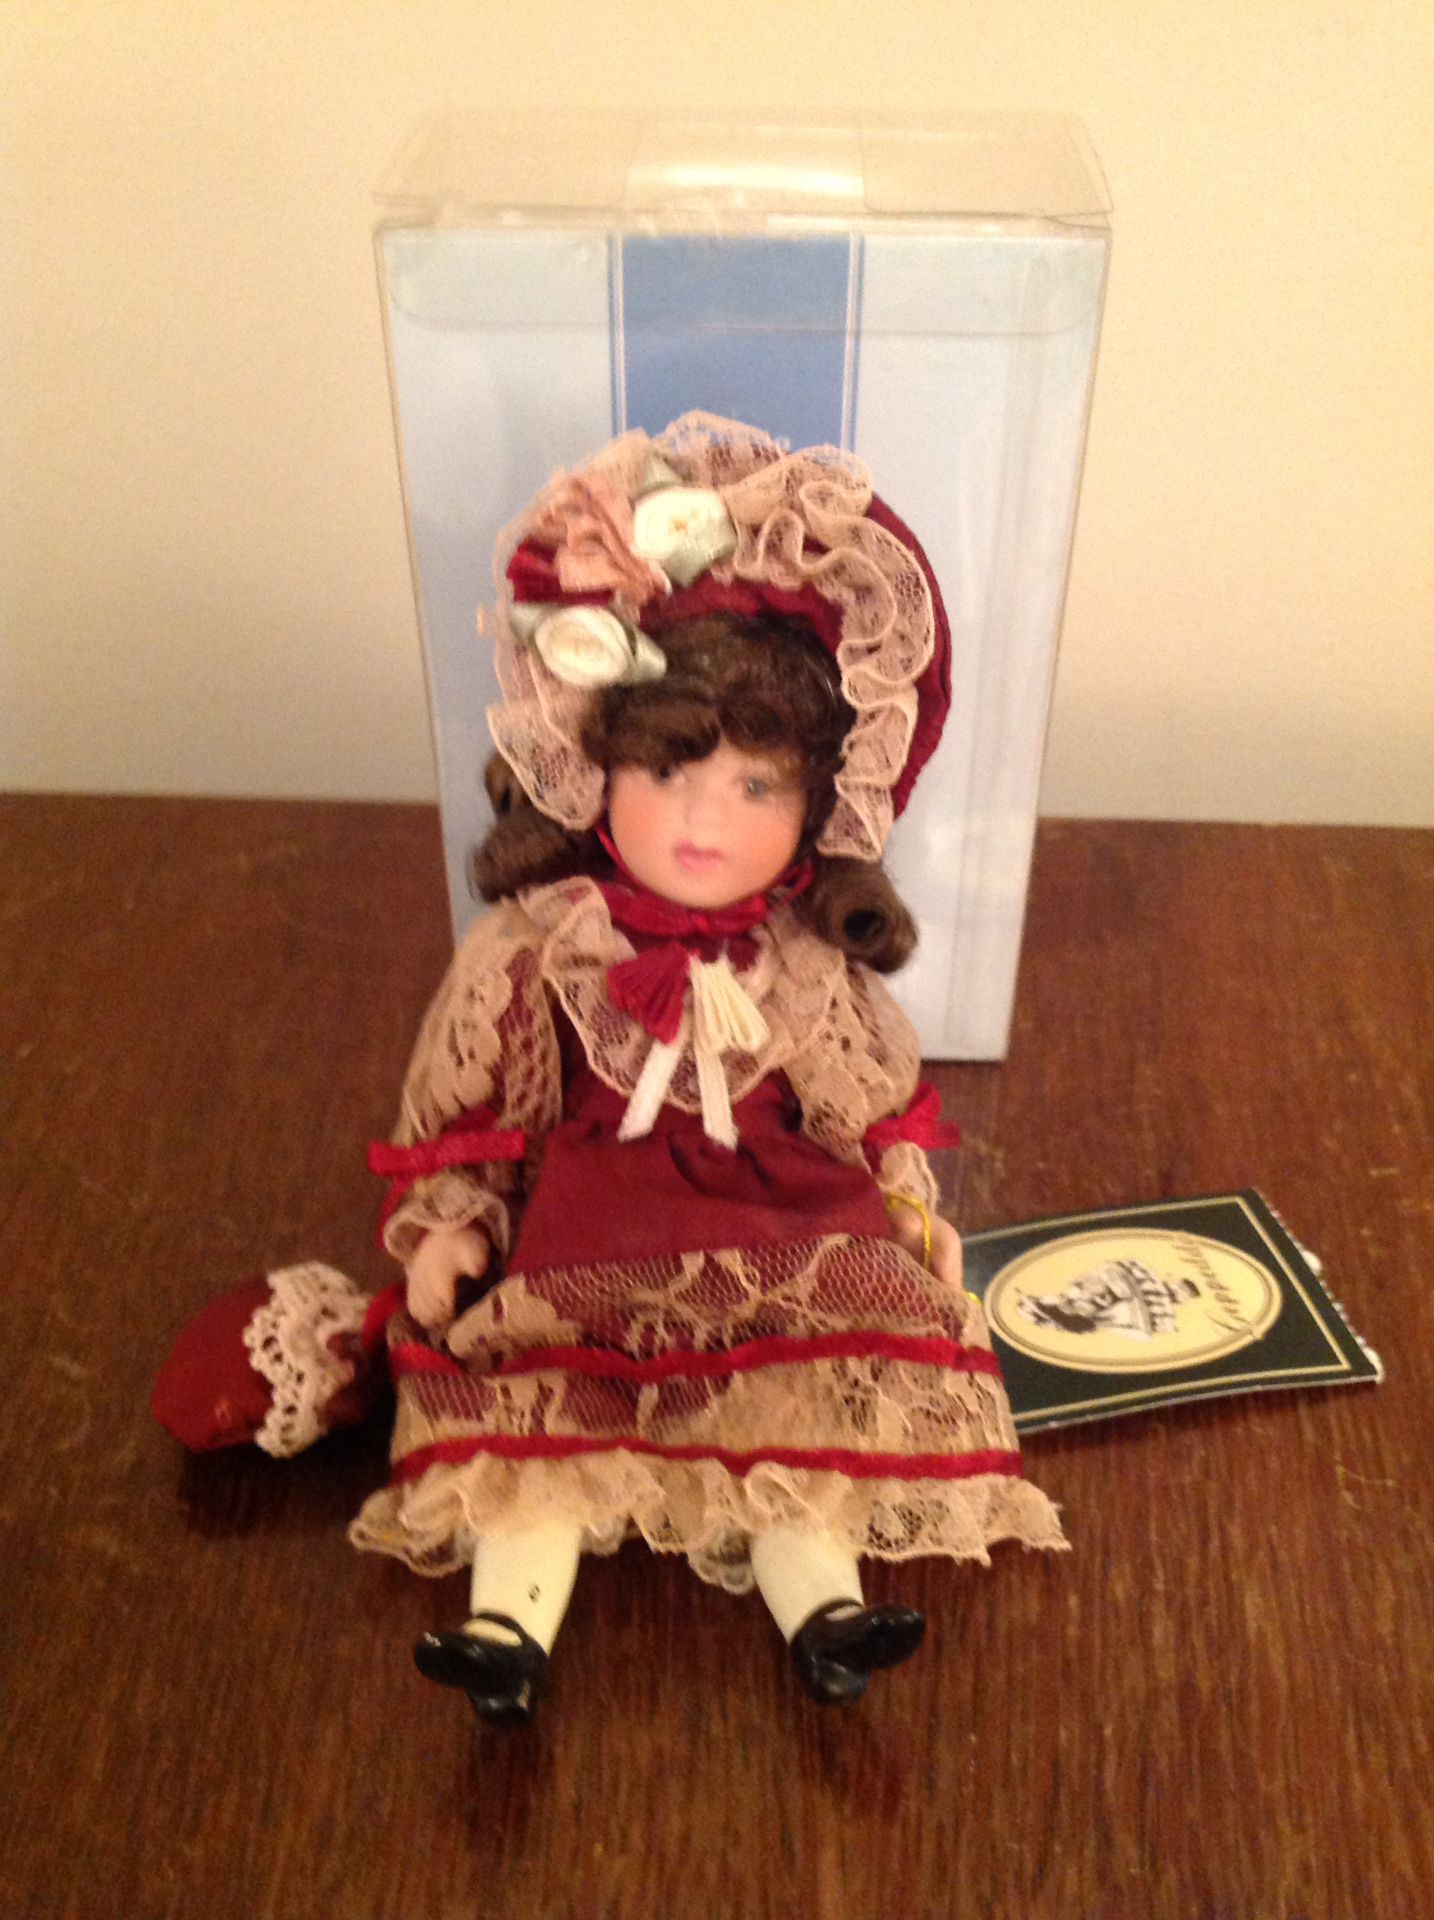 Vintage Geppedo porcelain doll